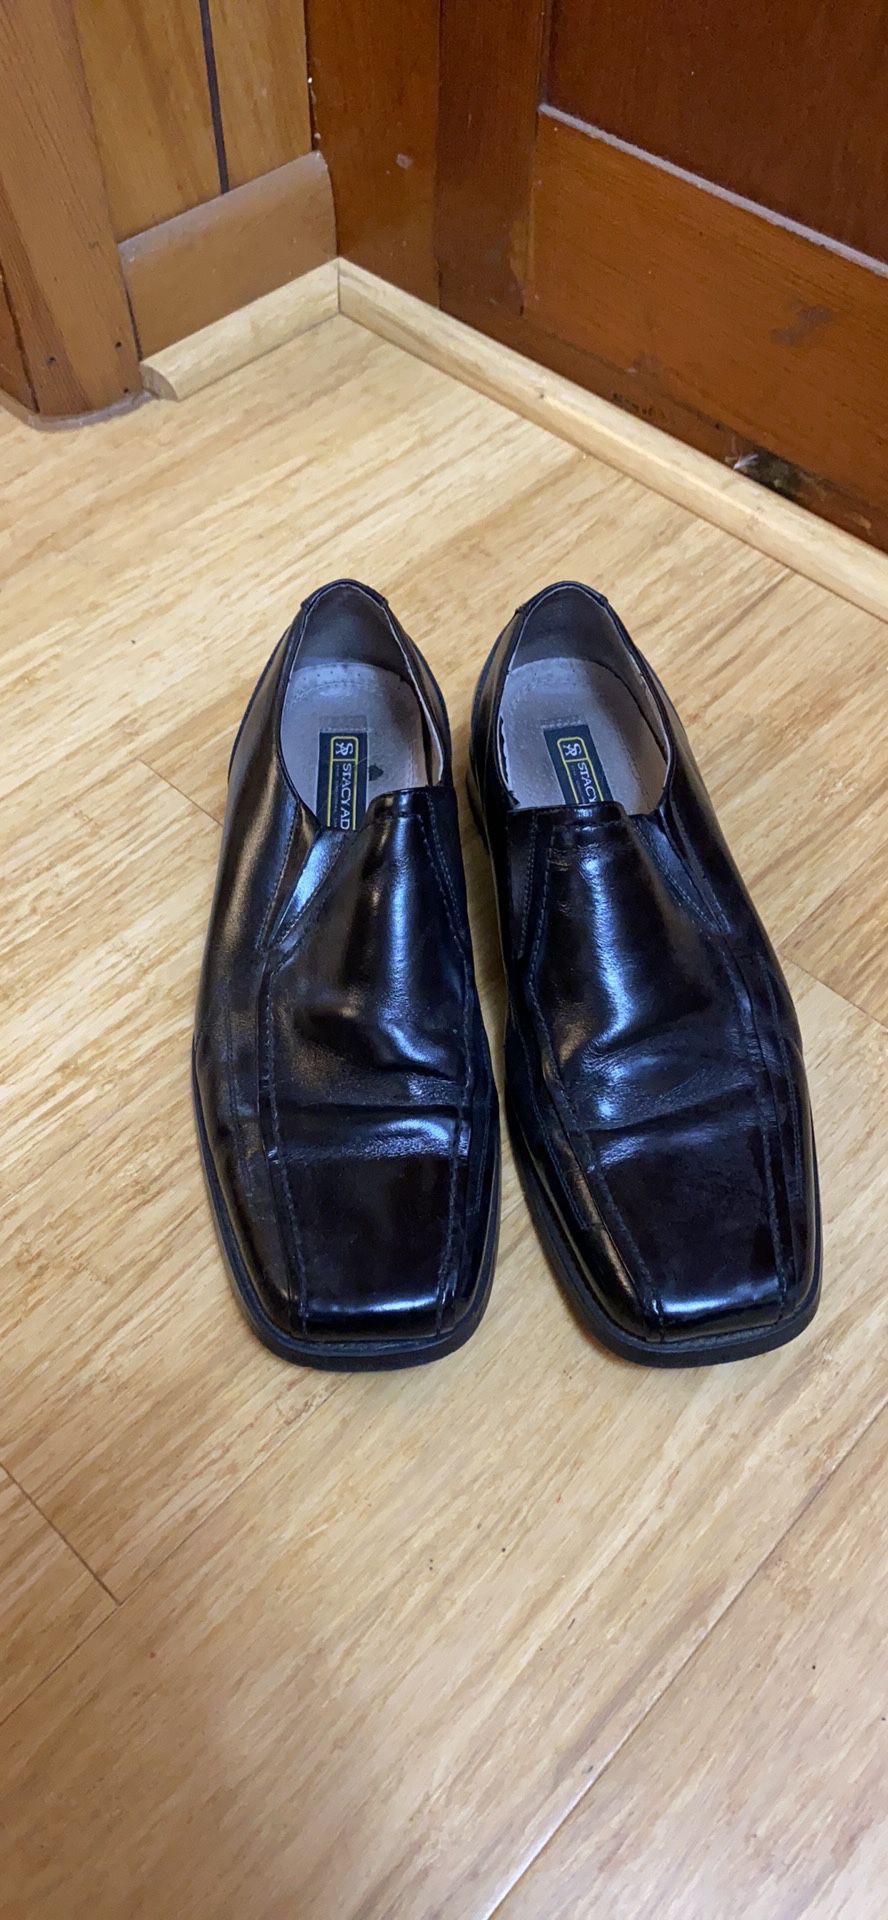 Men’s black leather dress shoes